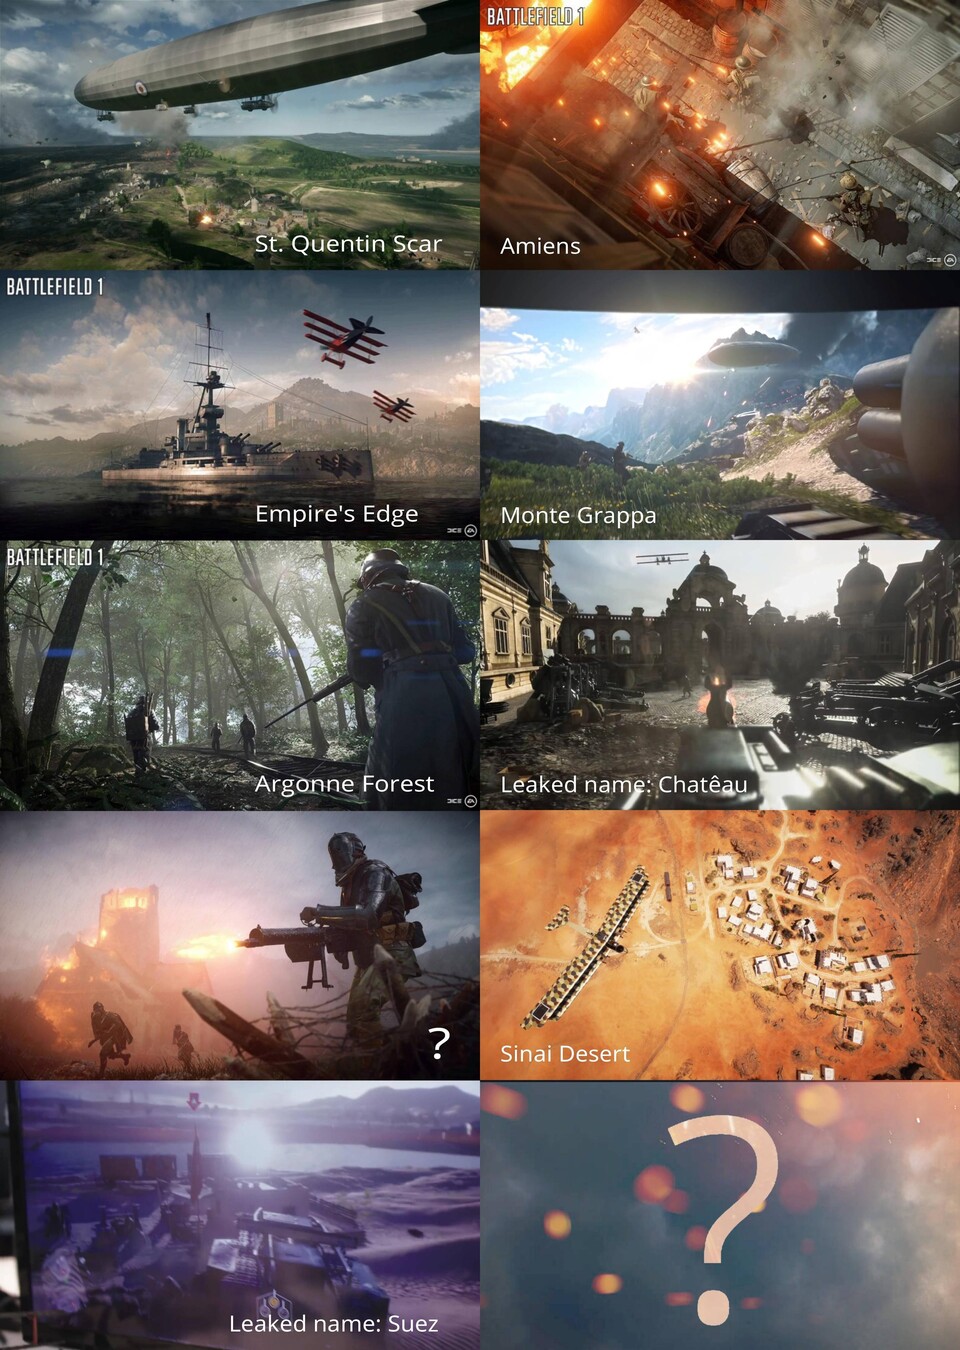 Diese Übersichtsgrafik zu den Multiplayer-Maps von Battlefield 1 ist vor kurzem aufgetaucht.